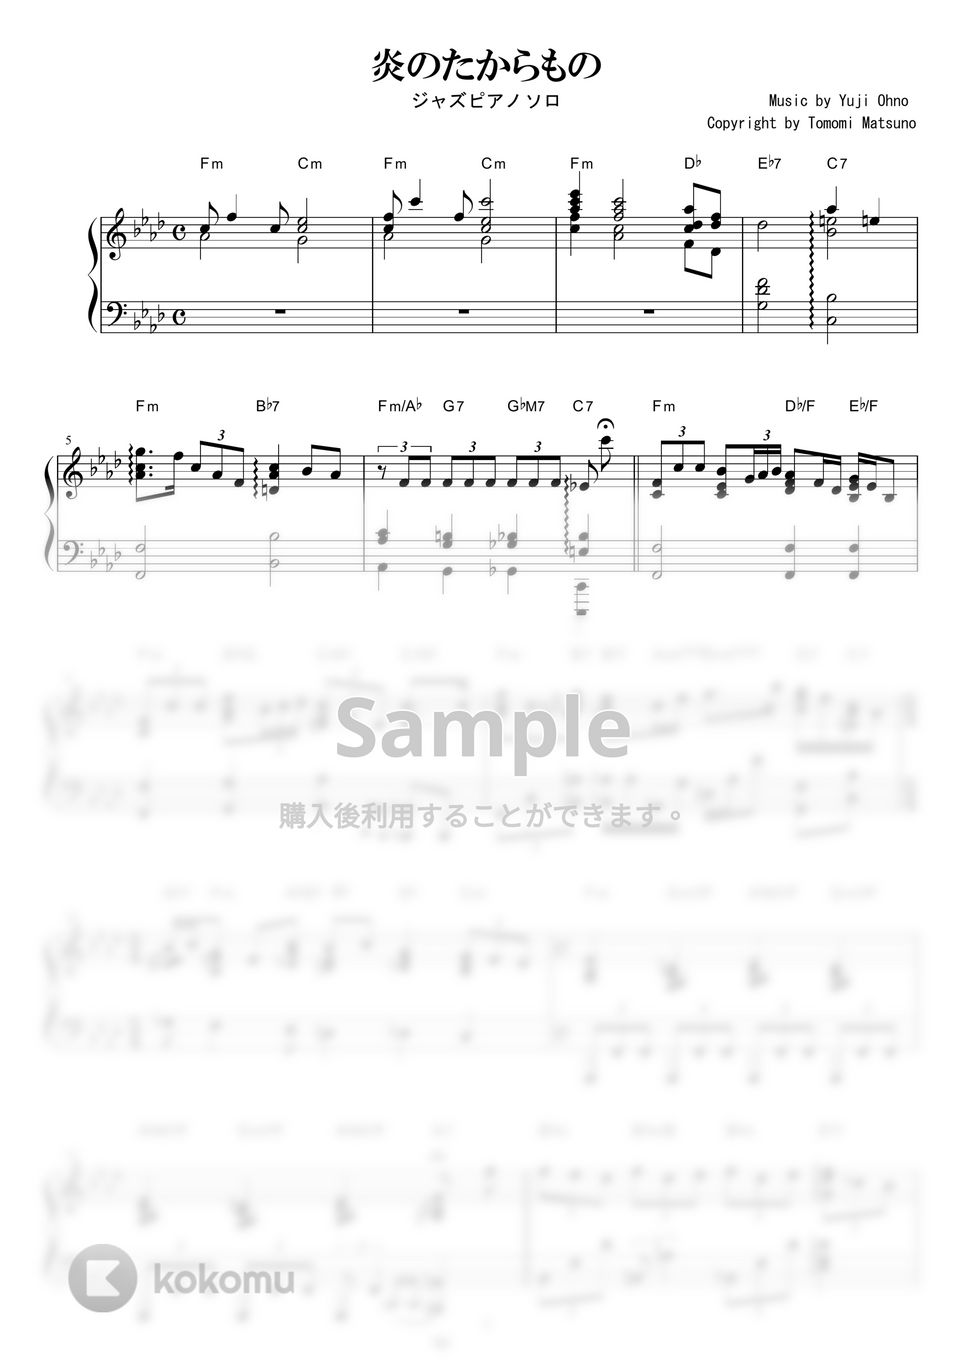 ルパン三世 - 炎のたからもの (Jazz ver.) by piano*score